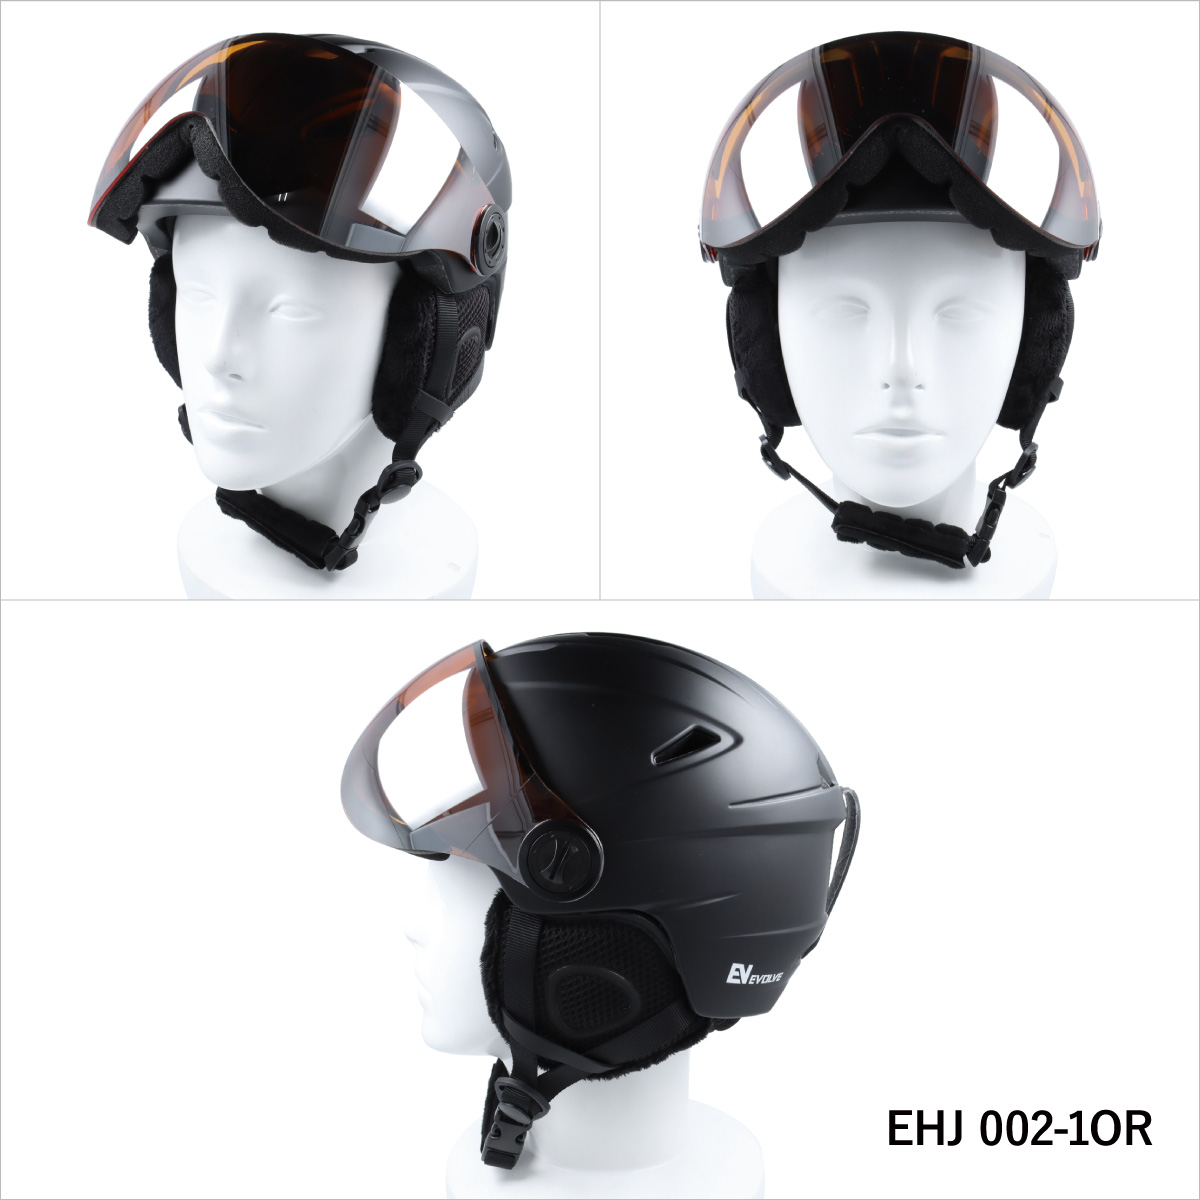 キッズ ジュニア バイザー付き ヘルメット スキー スノーボード スノボ イヴァルブ EVOLVE EHJ 002 全2カラー 子供用 ユース ウィンタースポーツ